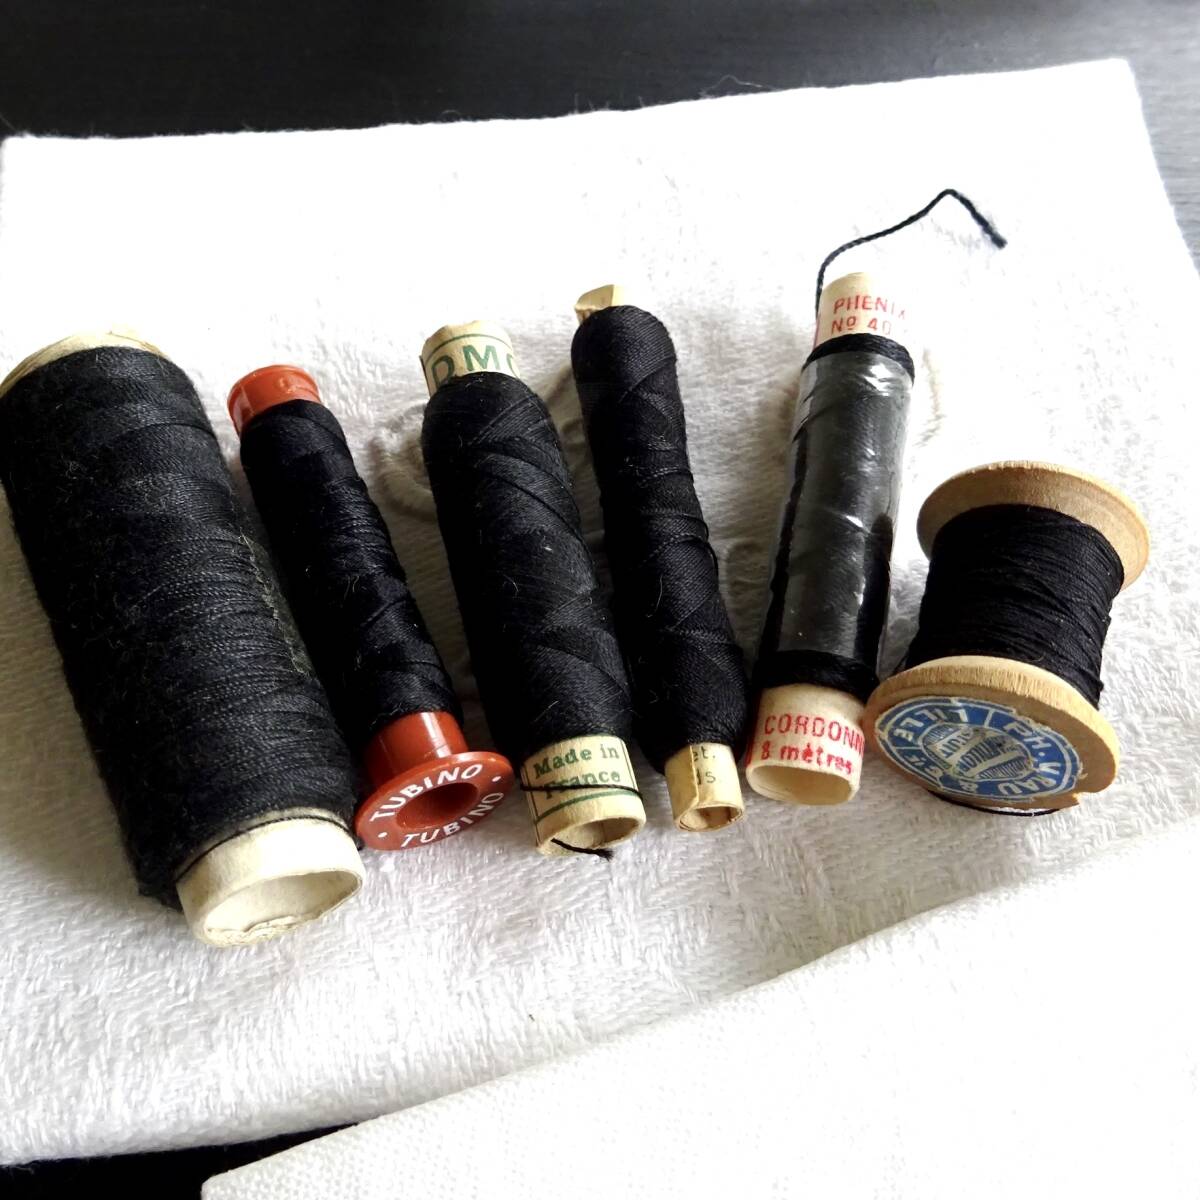 20世紀 フランス 裁縫 糸セット 6点 ブラック 黒 民藝 工藝 オブジェ 美術 骨董 古道具 縫製 古布 アンティーク_画像2